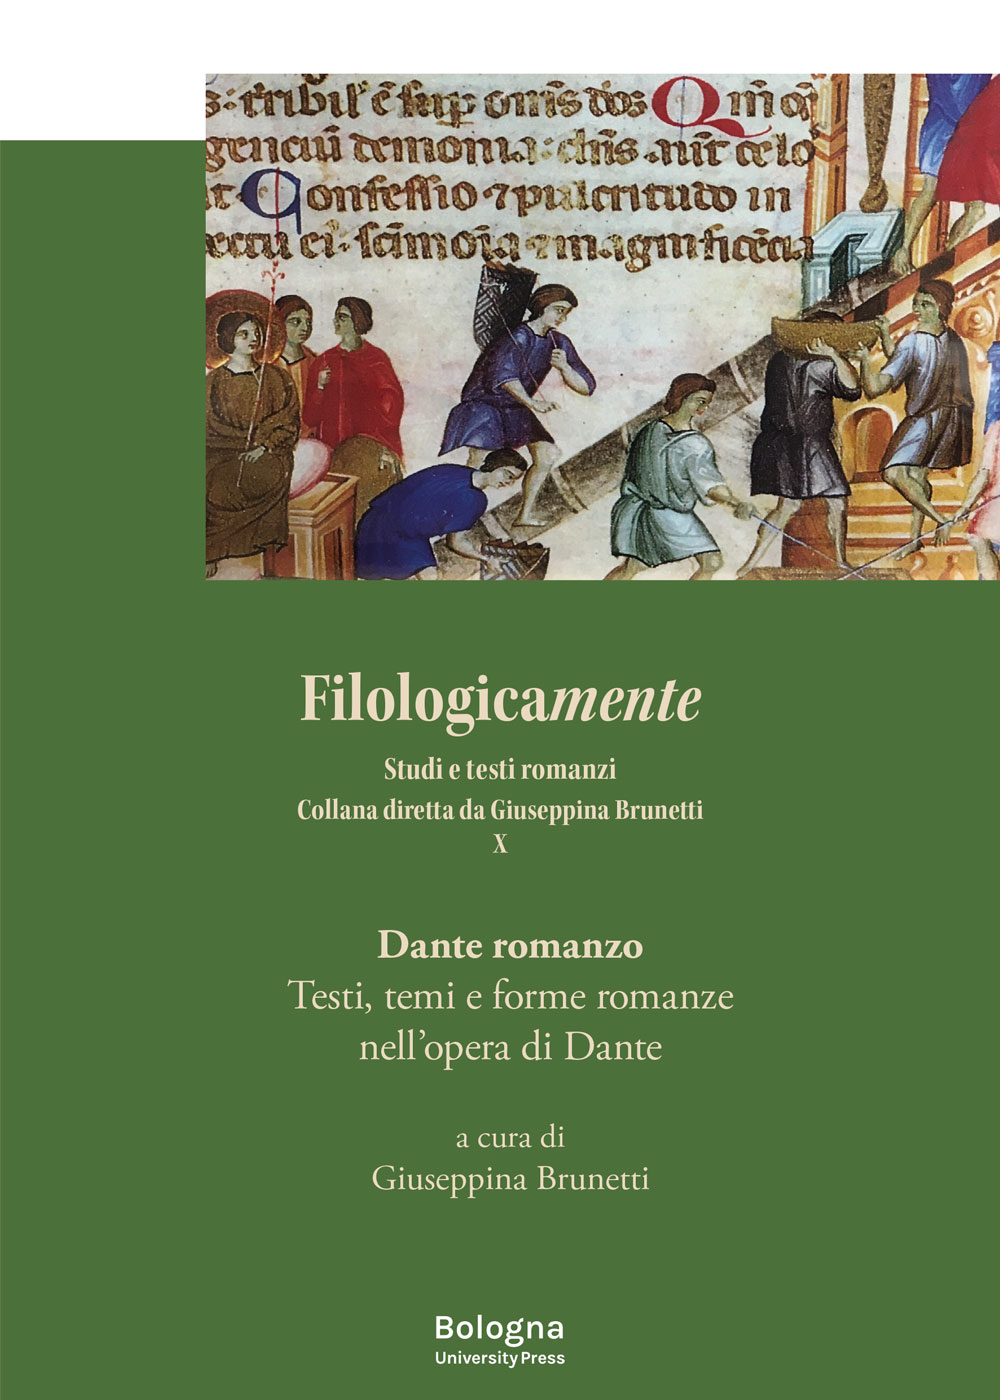 Dante romanzo - Bologna University Press